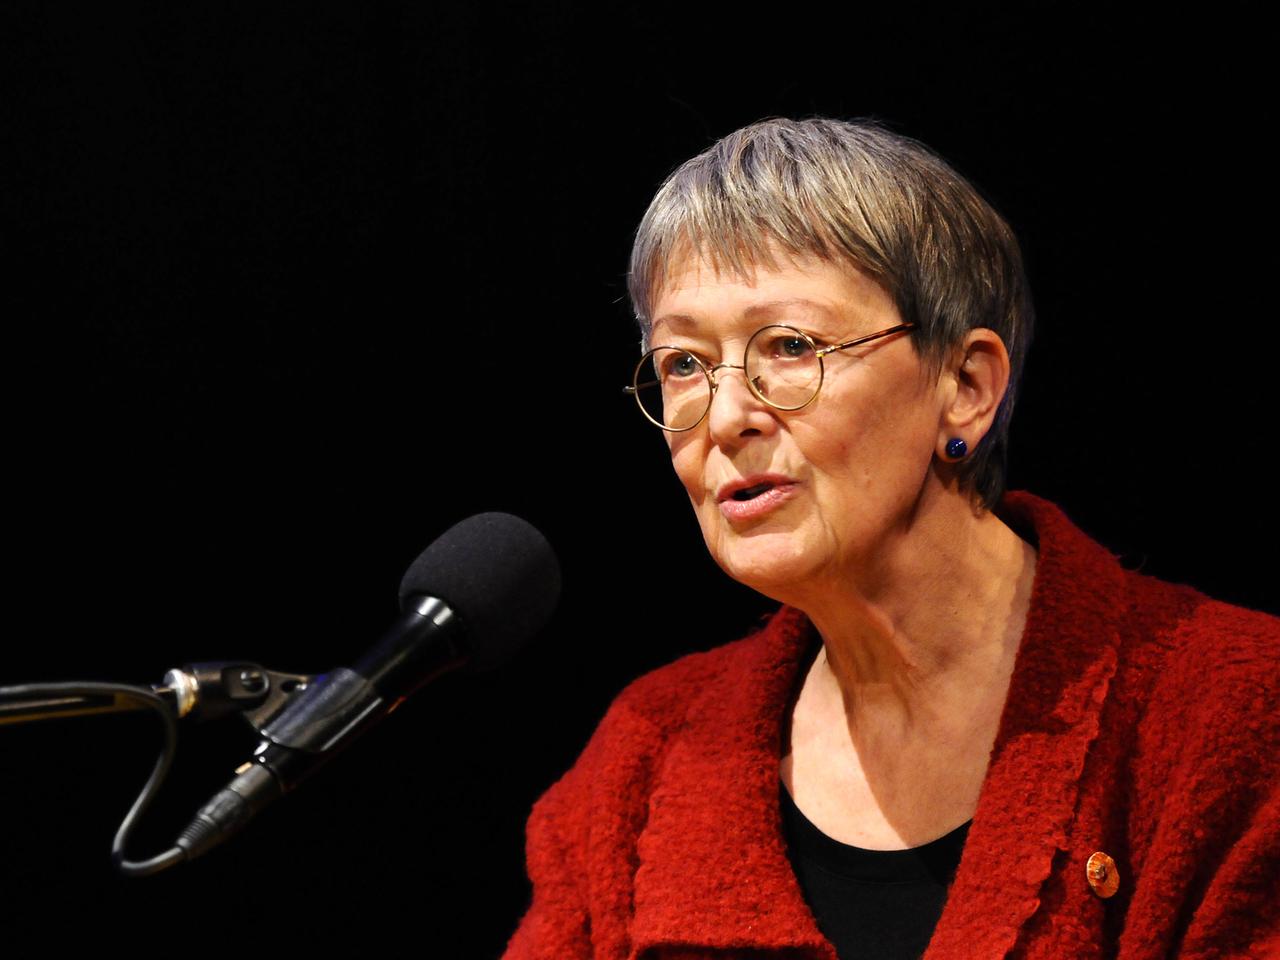 Die Autorin Viola Roggenkamp liest am 11.03.2013 in Köln im Rahmen des Literaturfestivals Lit.Cologne. 